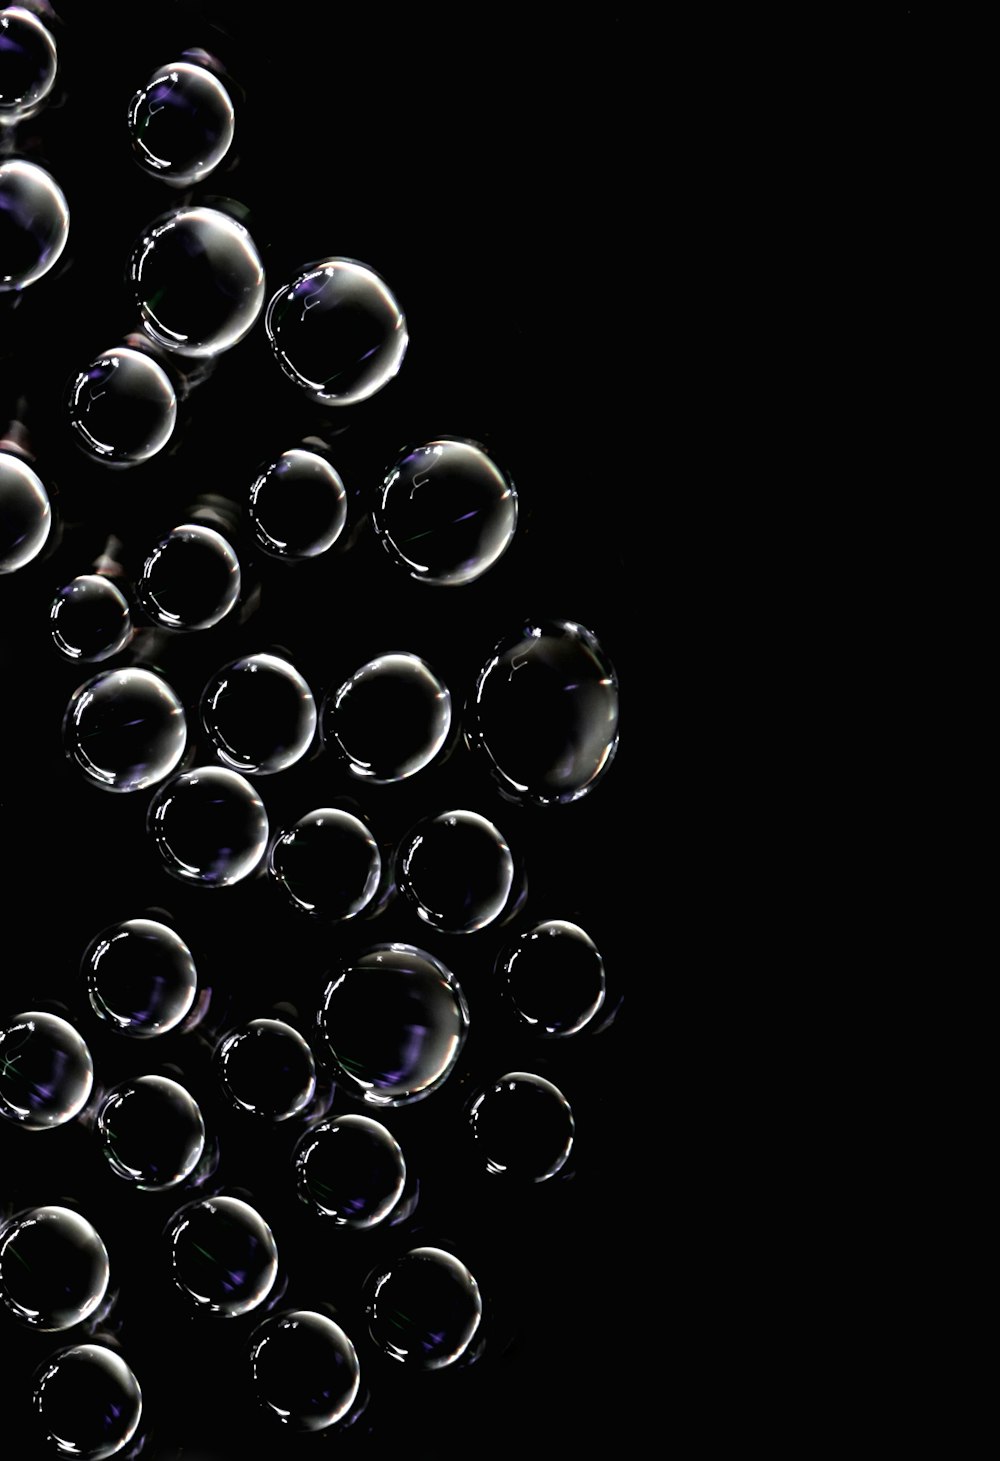 Foto fondo de pantalla de burbujas en blanco y negro – Imagen Burbuja  gratis en Unsplash